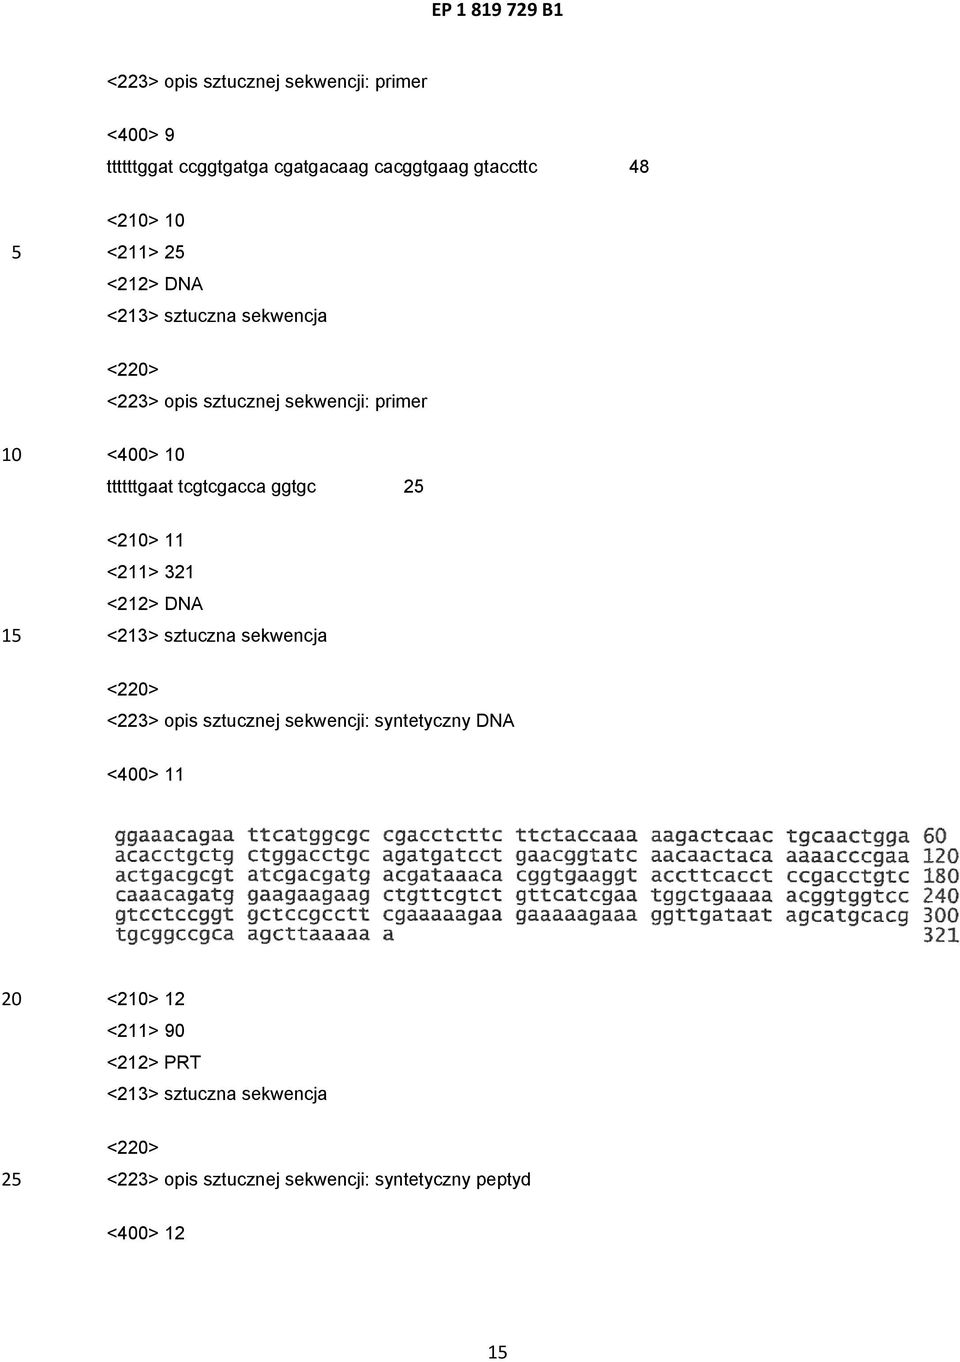 <223> opis sztucznej sekwencji: syntetyczny DNA <400> 11 <2> 12 <211>